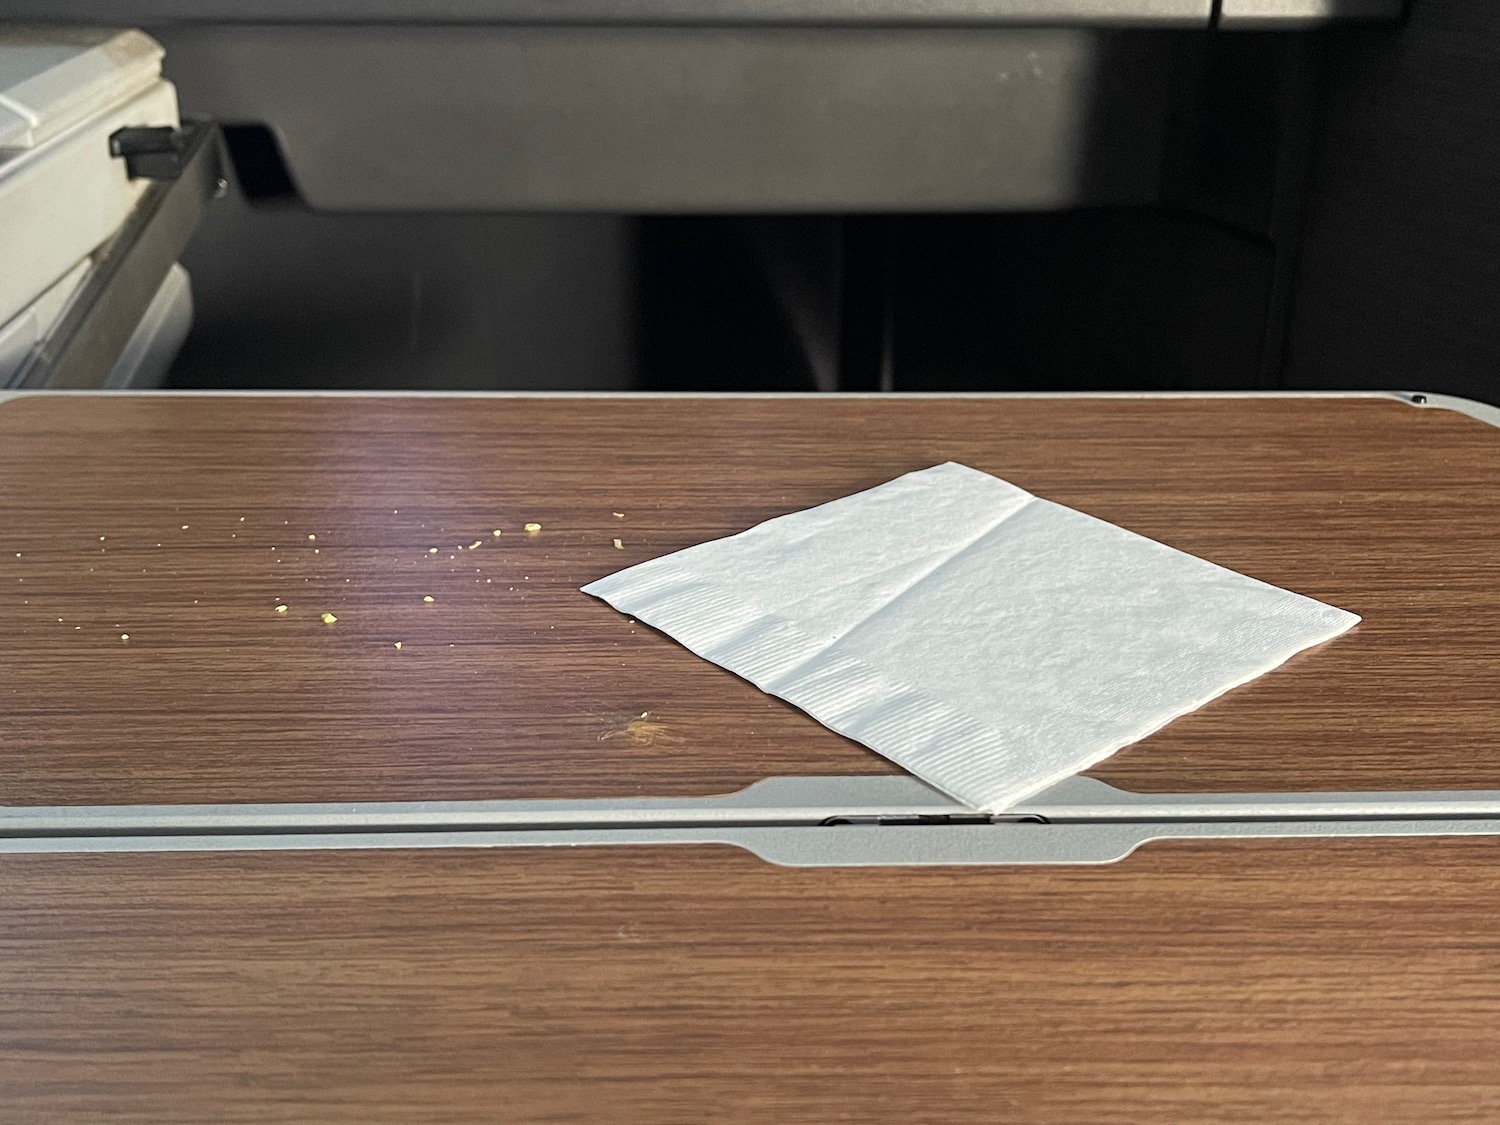 a napkin on a table